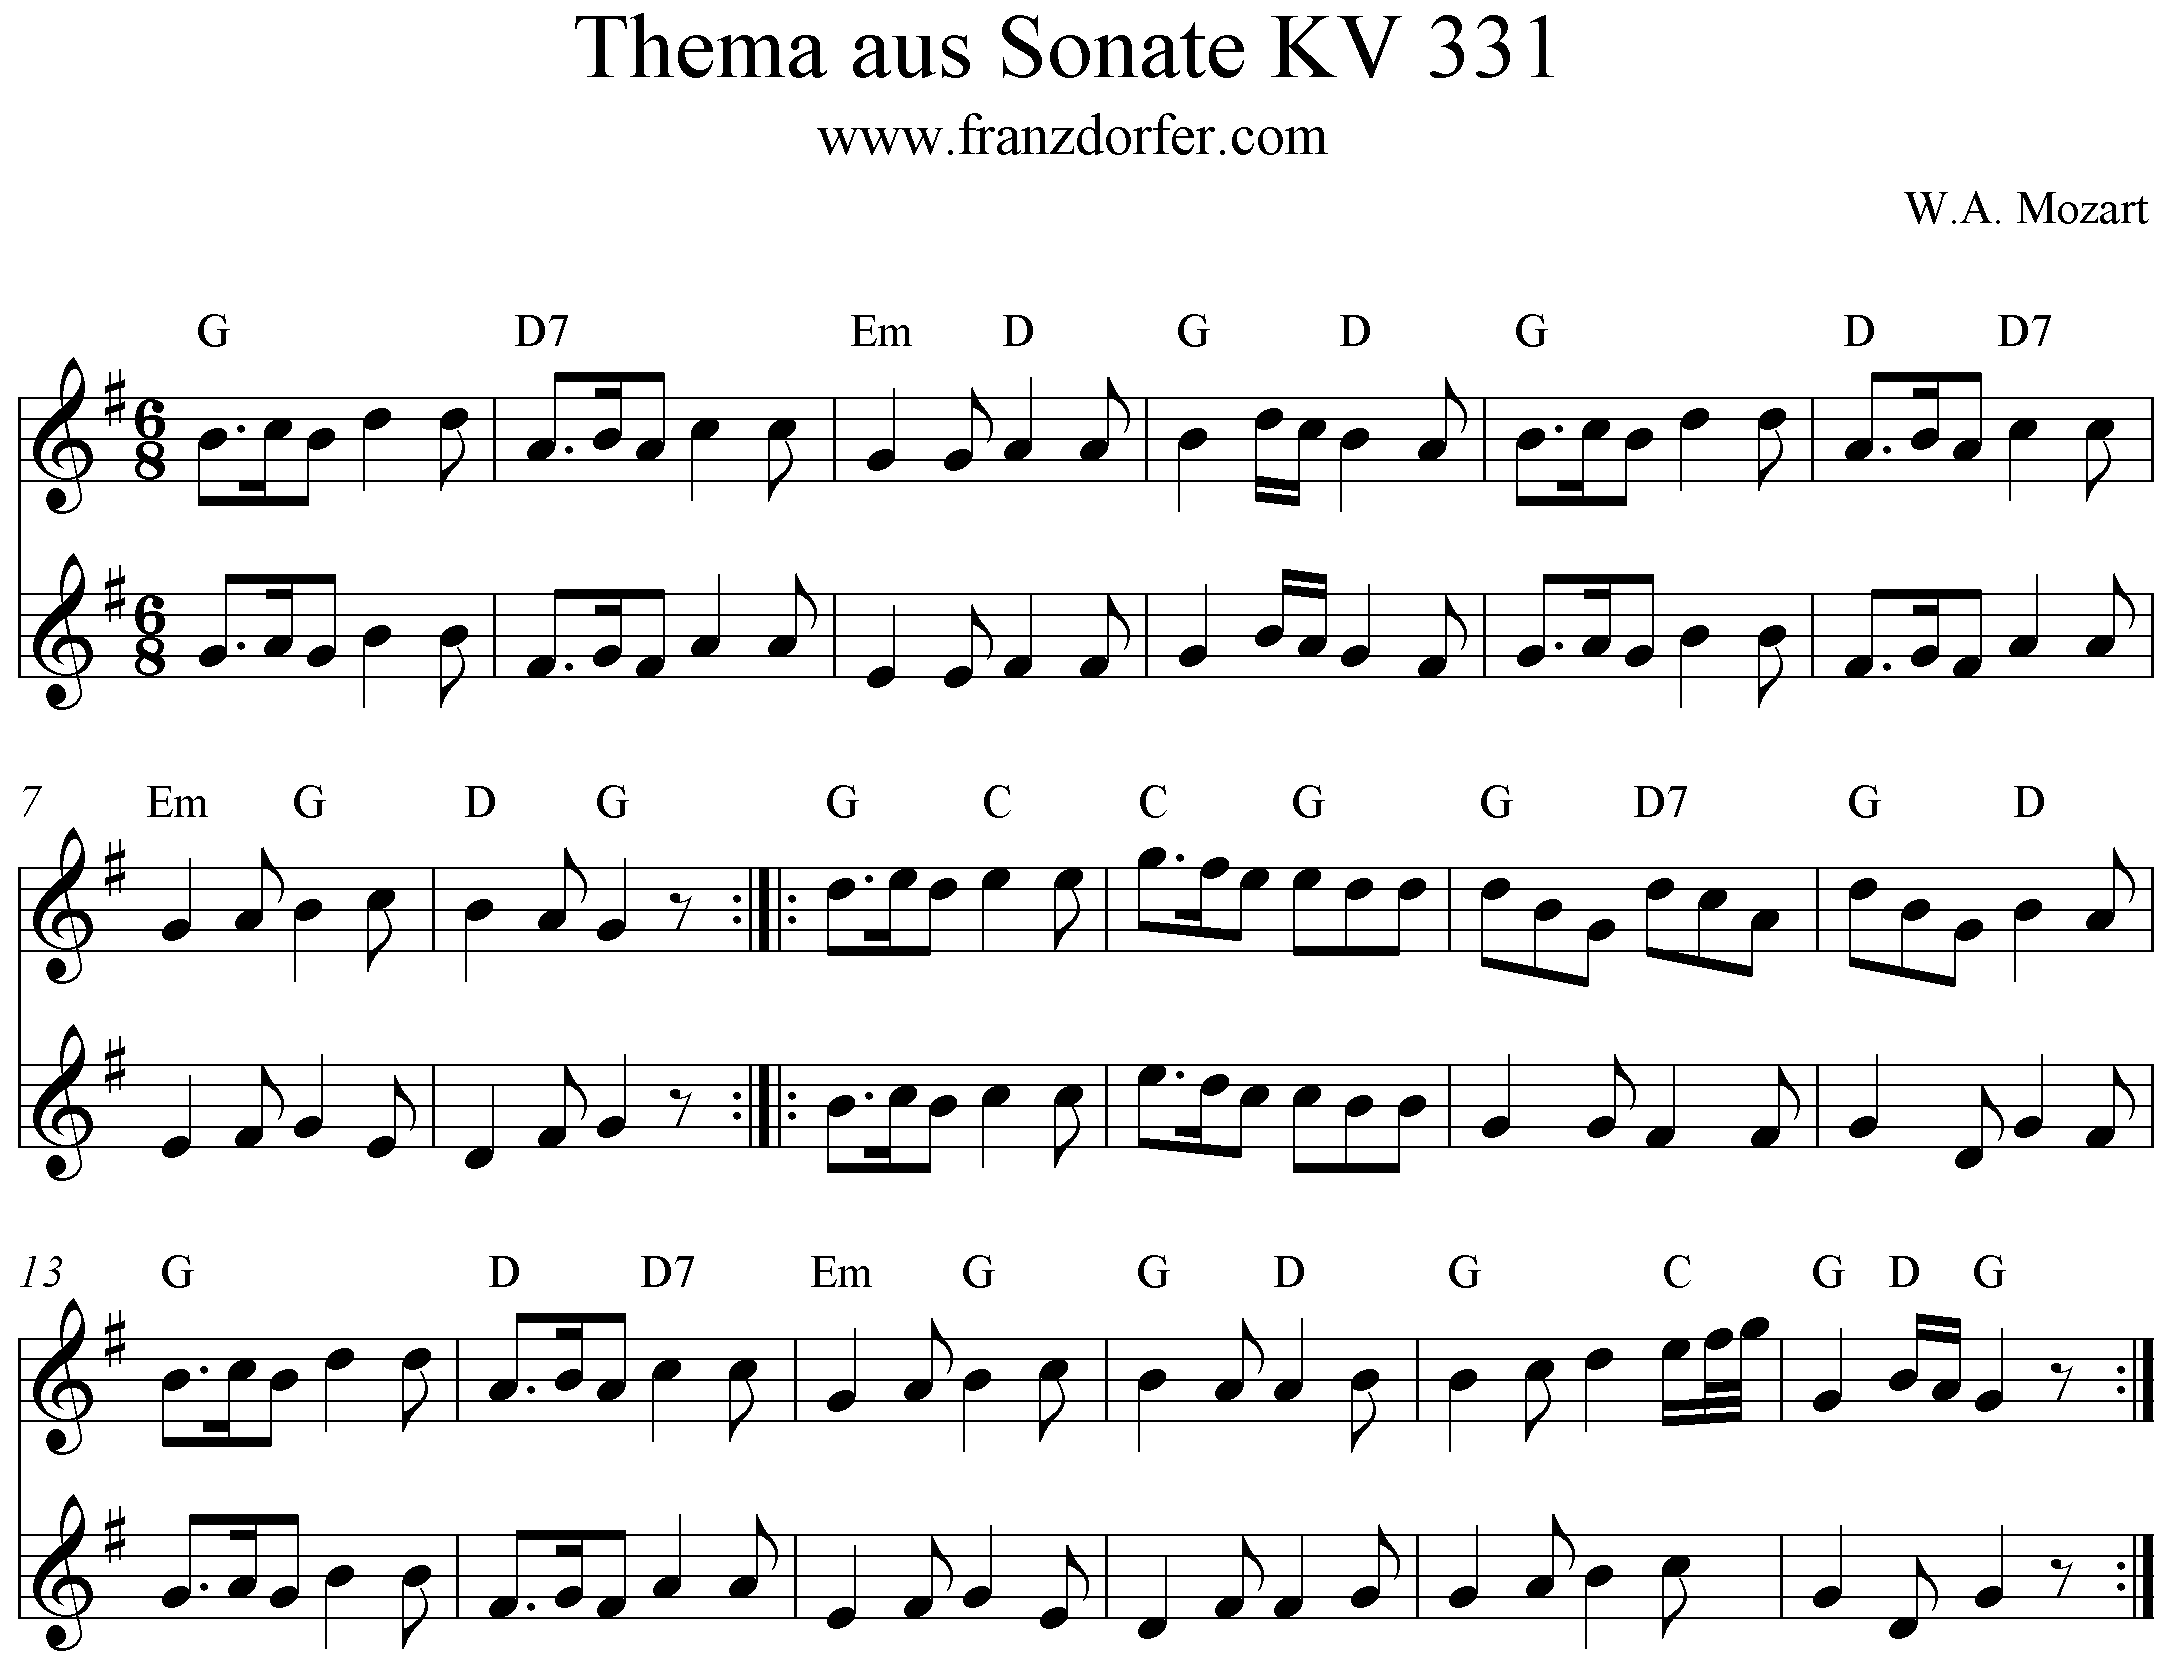 Noten Sonate KV331 Thema 